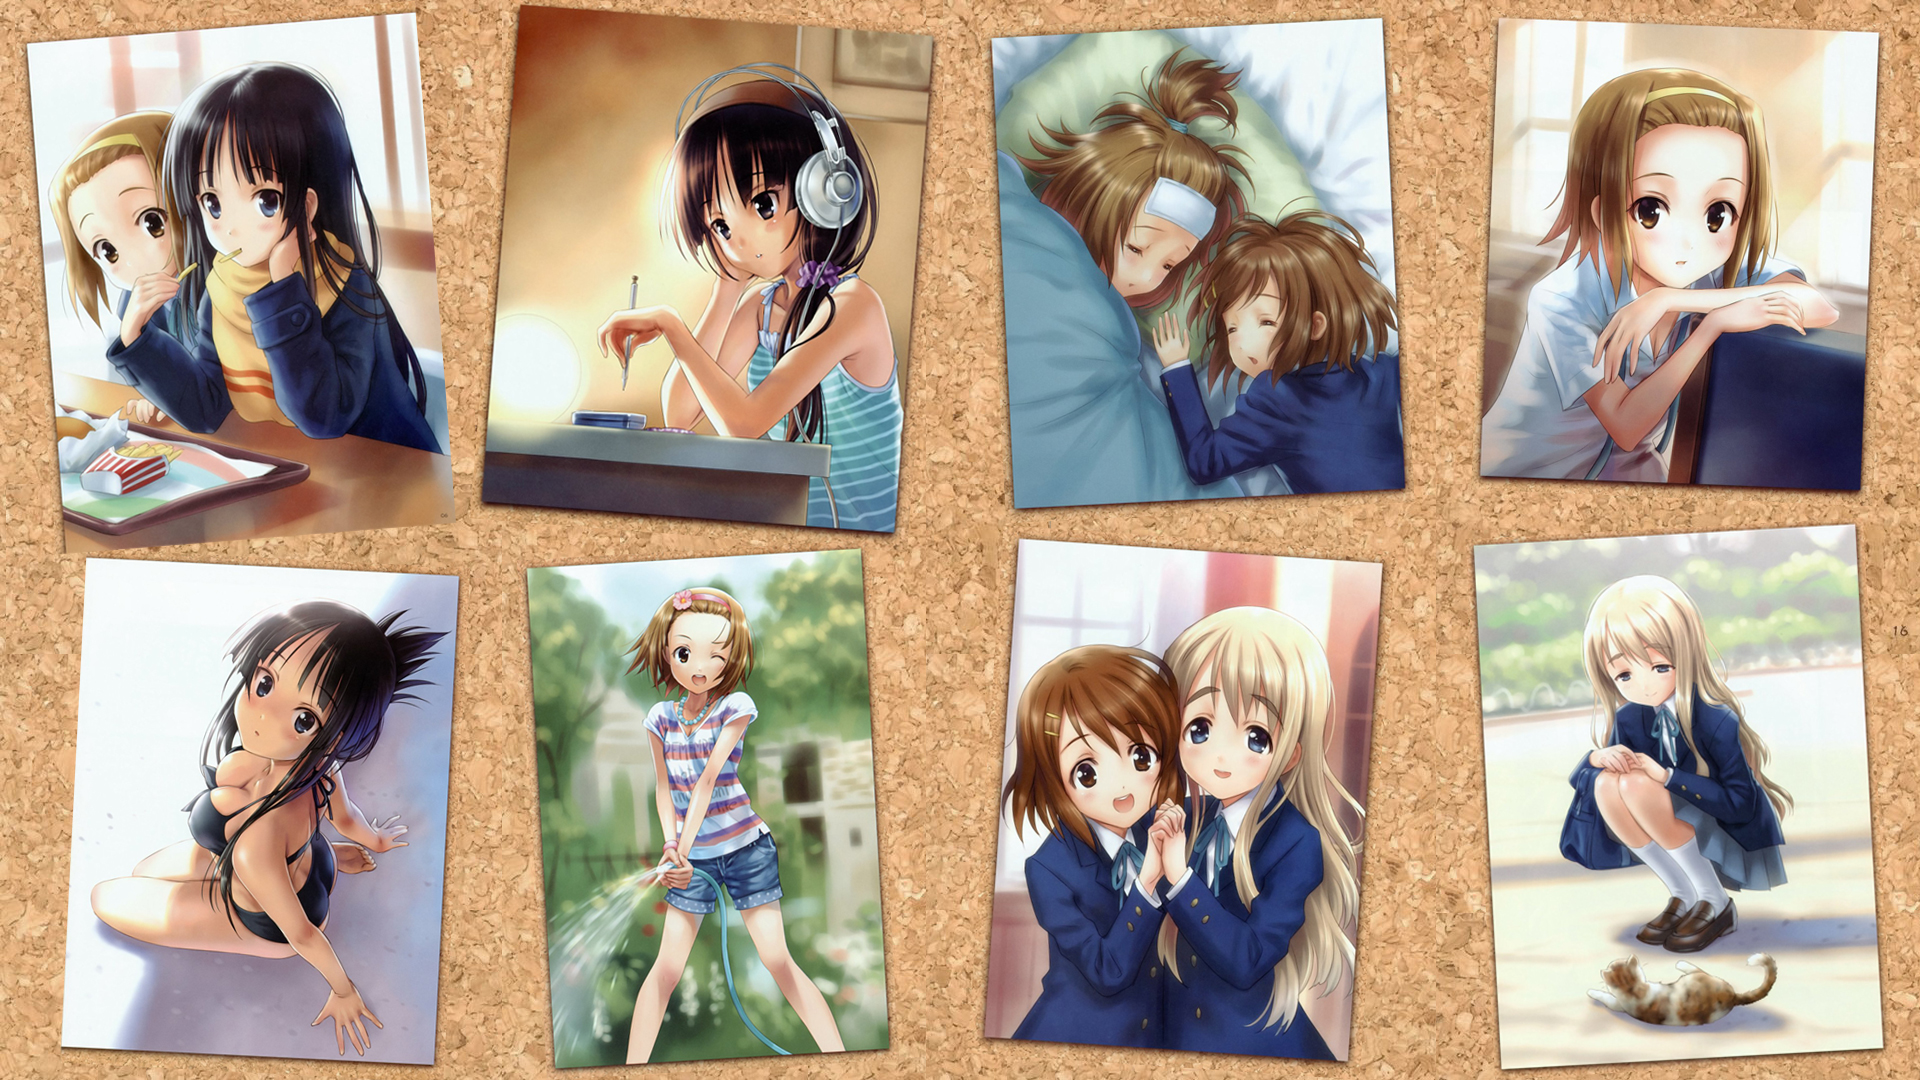 K-ON!, school uniforms, Hirasawa Yui, Akiyama Mio, Tainaka Ritsu, Kotobuki Tsumugi, Hirasawa Ui - desktop wallpaper